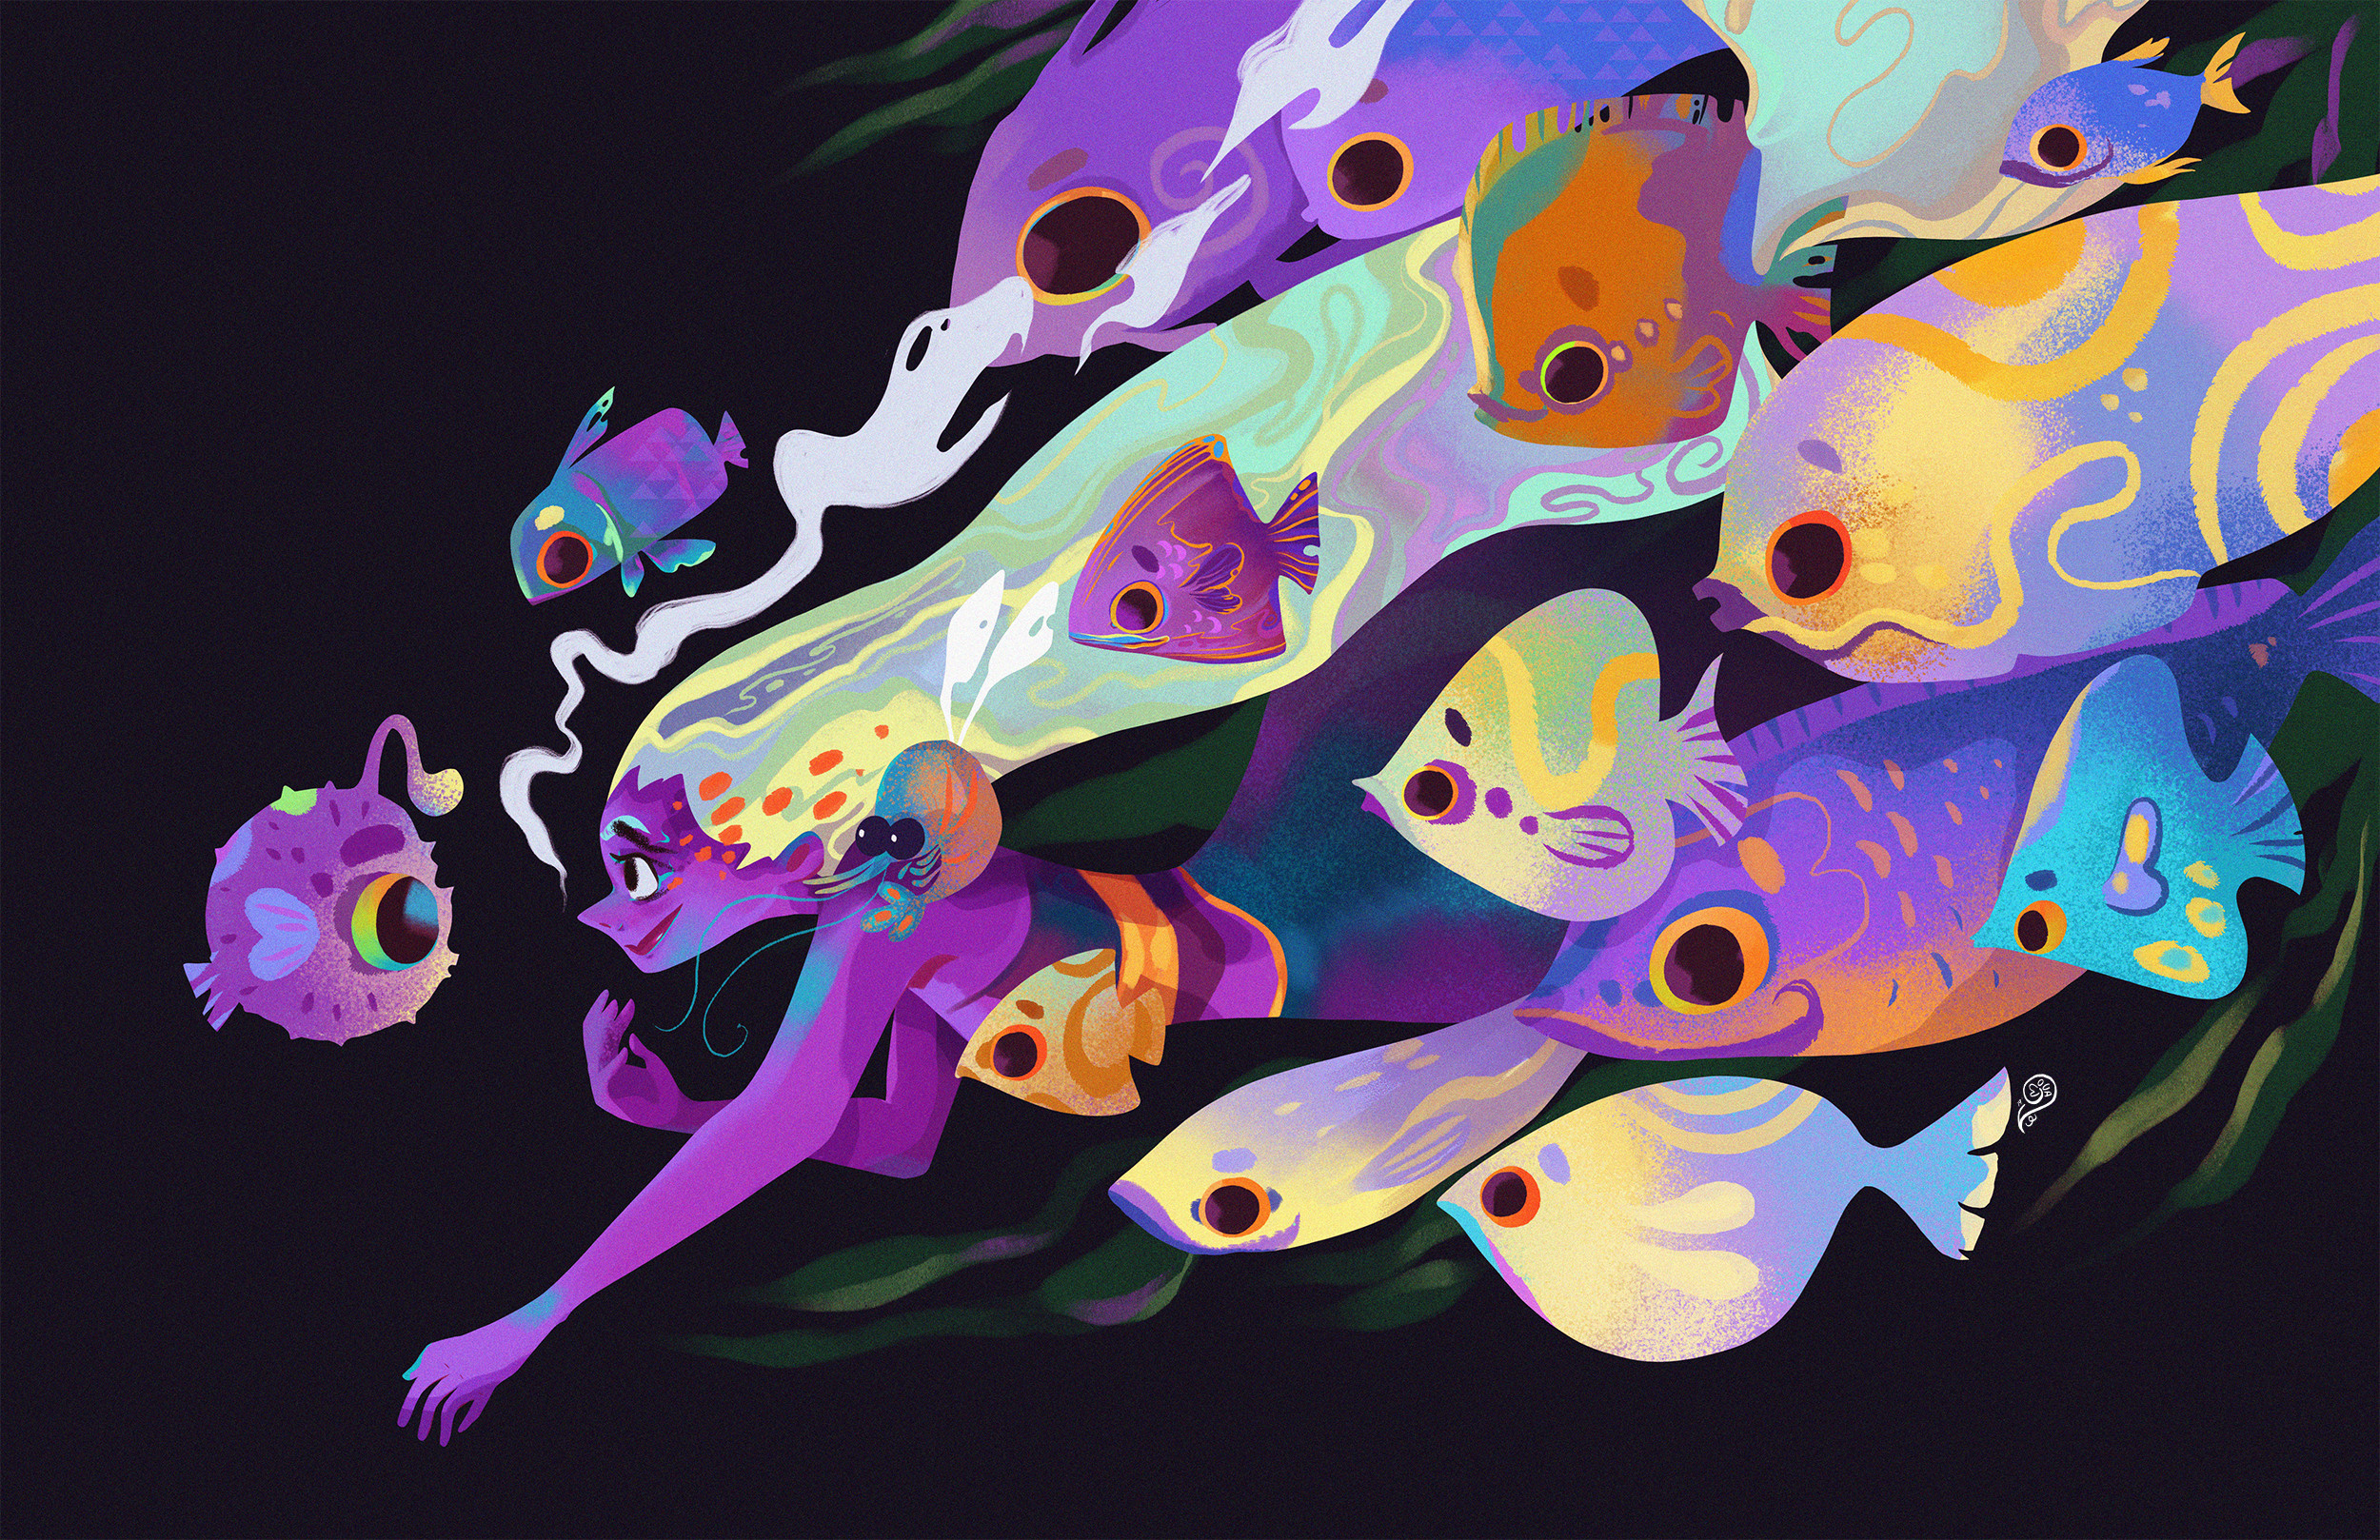 General 2500x1618 Vanessa Morales illustration colorful women long hair nature water fish mermaids sea artwork digital art